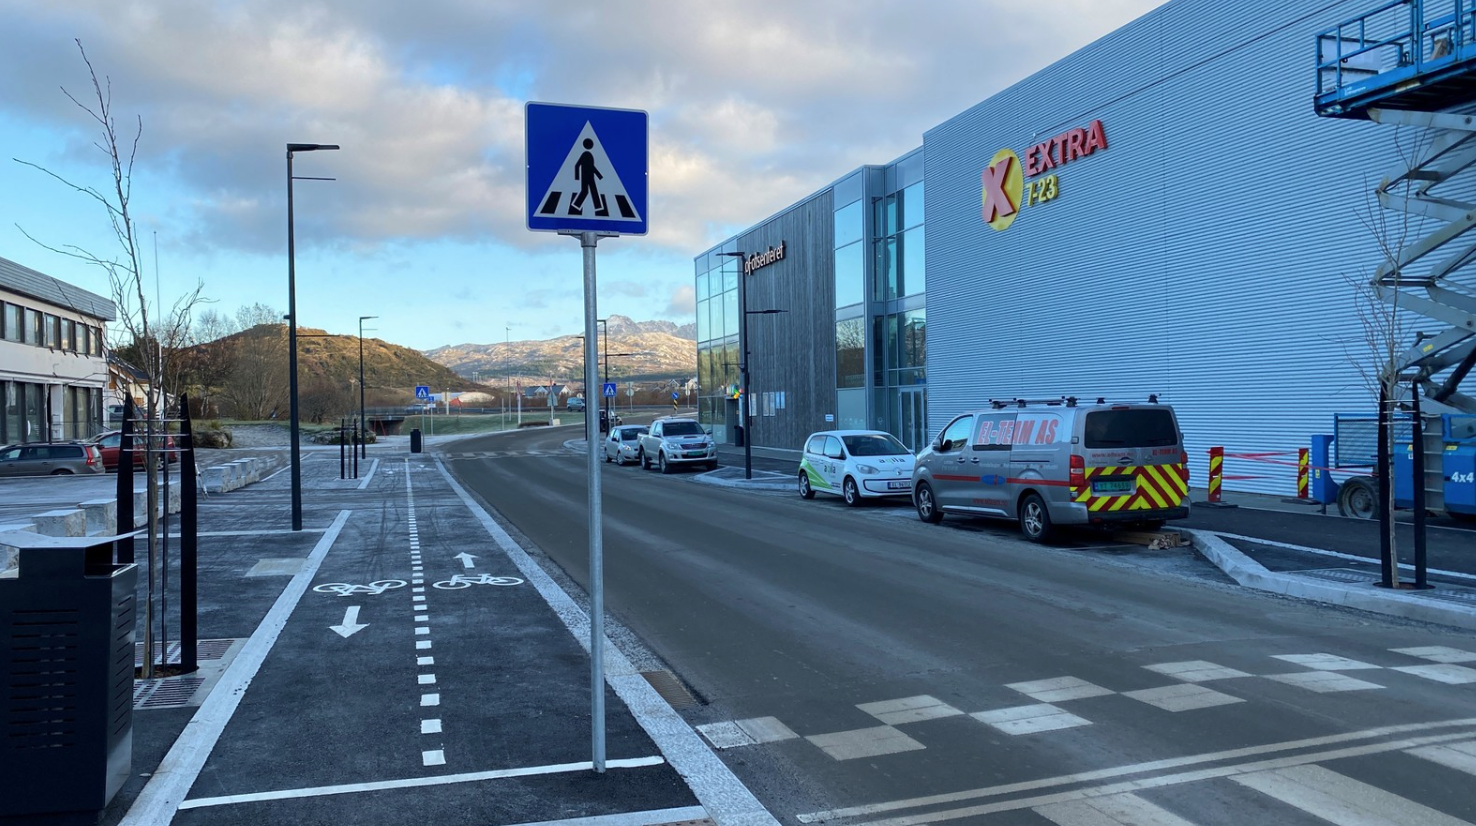 Ótrúlegt en satt – Þetta er ekki í Reykjavík